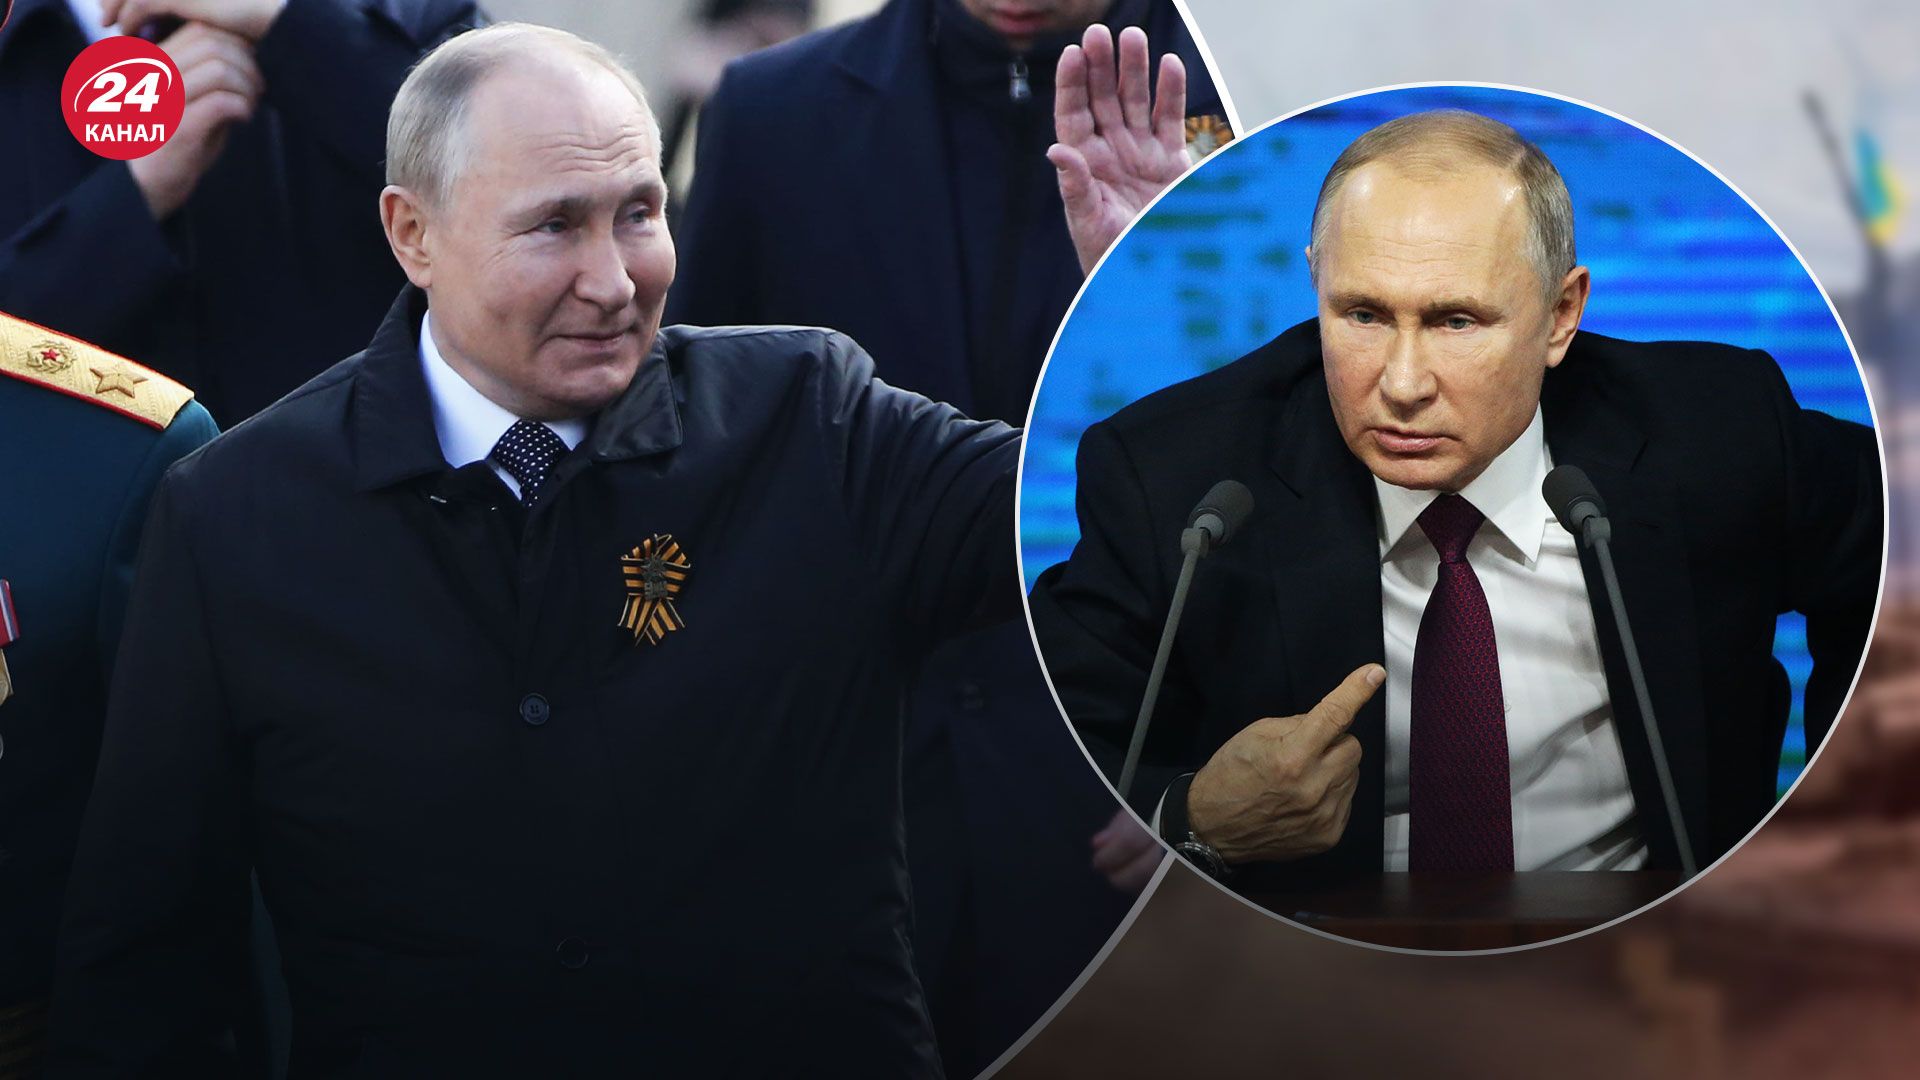 Двойник Путина мог быть на прямой линии 14 декабря - какие факты об этом свидетельствуют